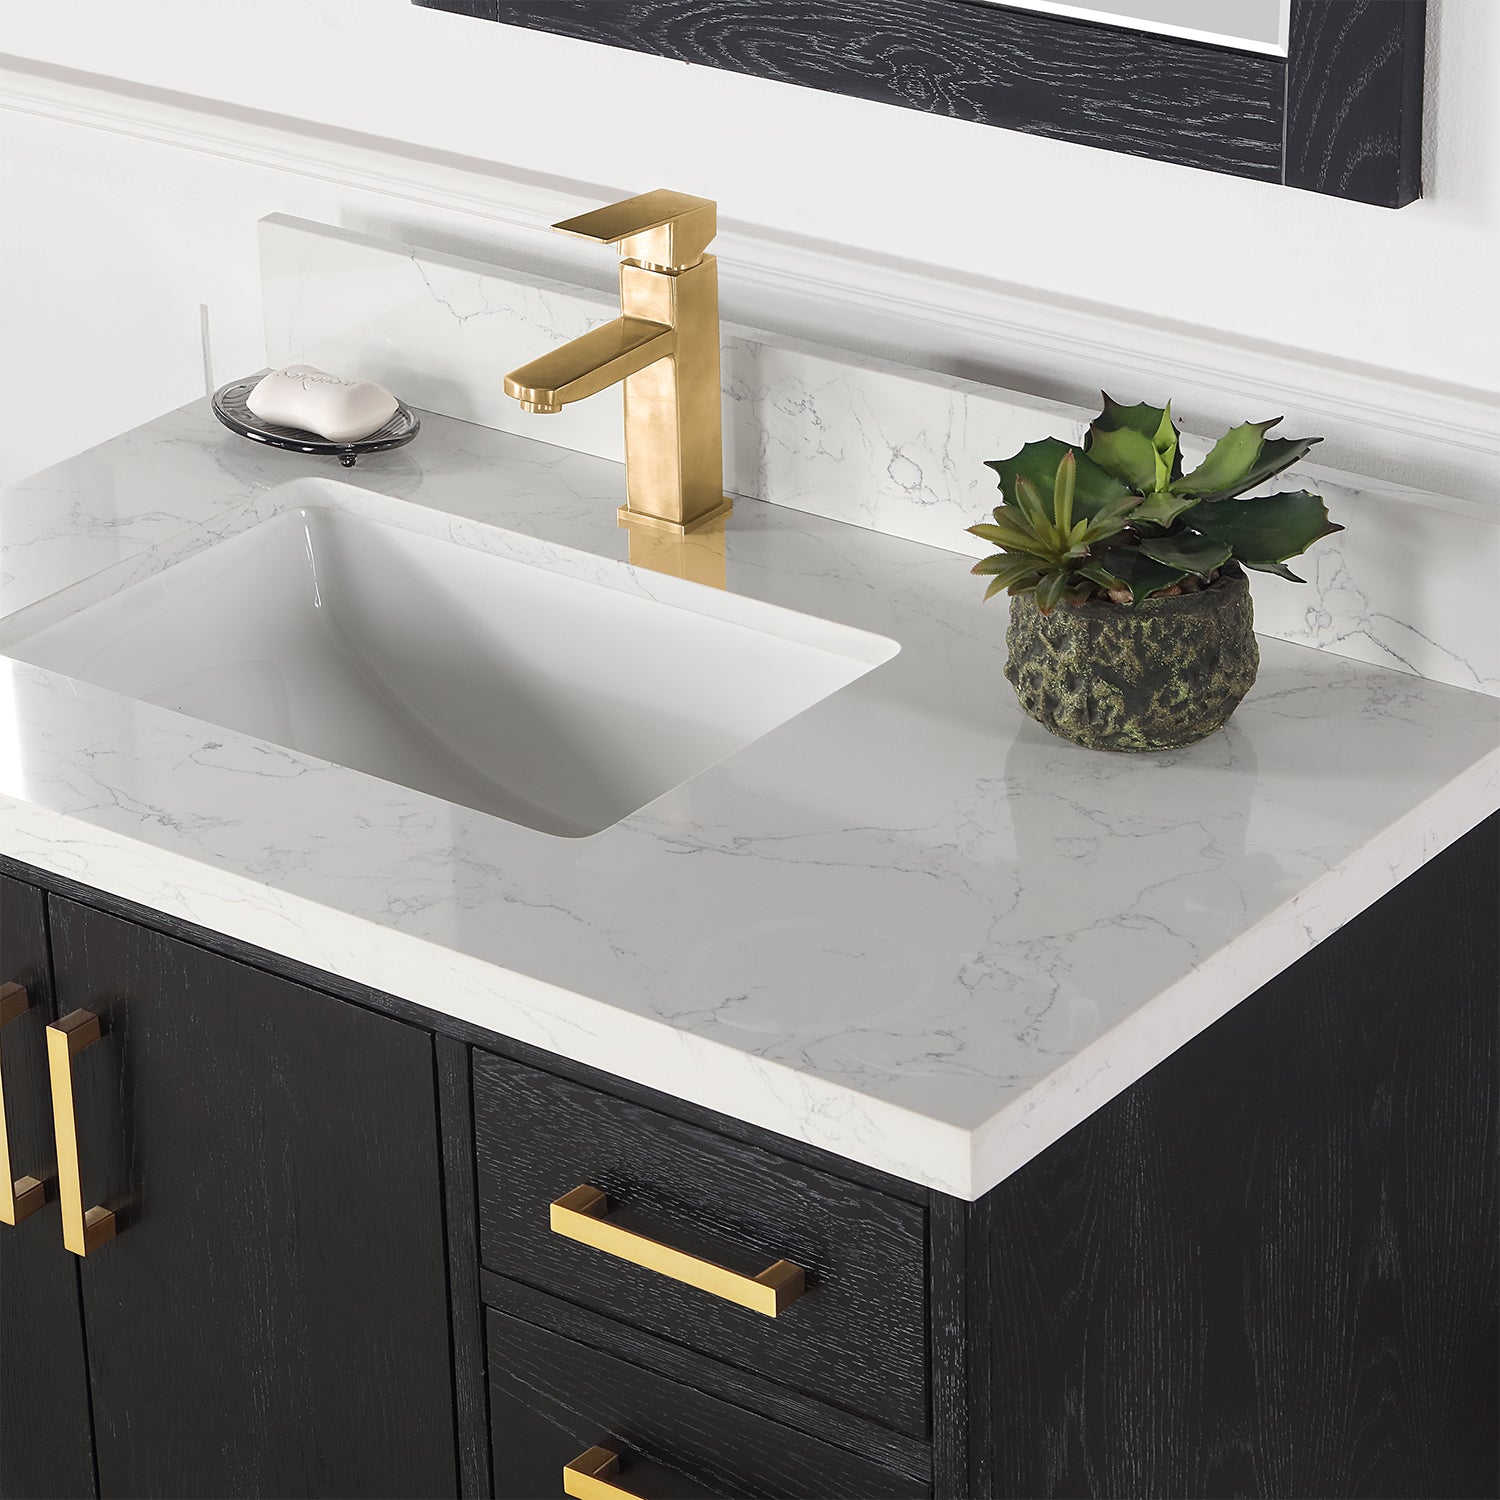 Wildy 36" Single Bathroom Vanity Set with Grain White Composite Stone Countertop